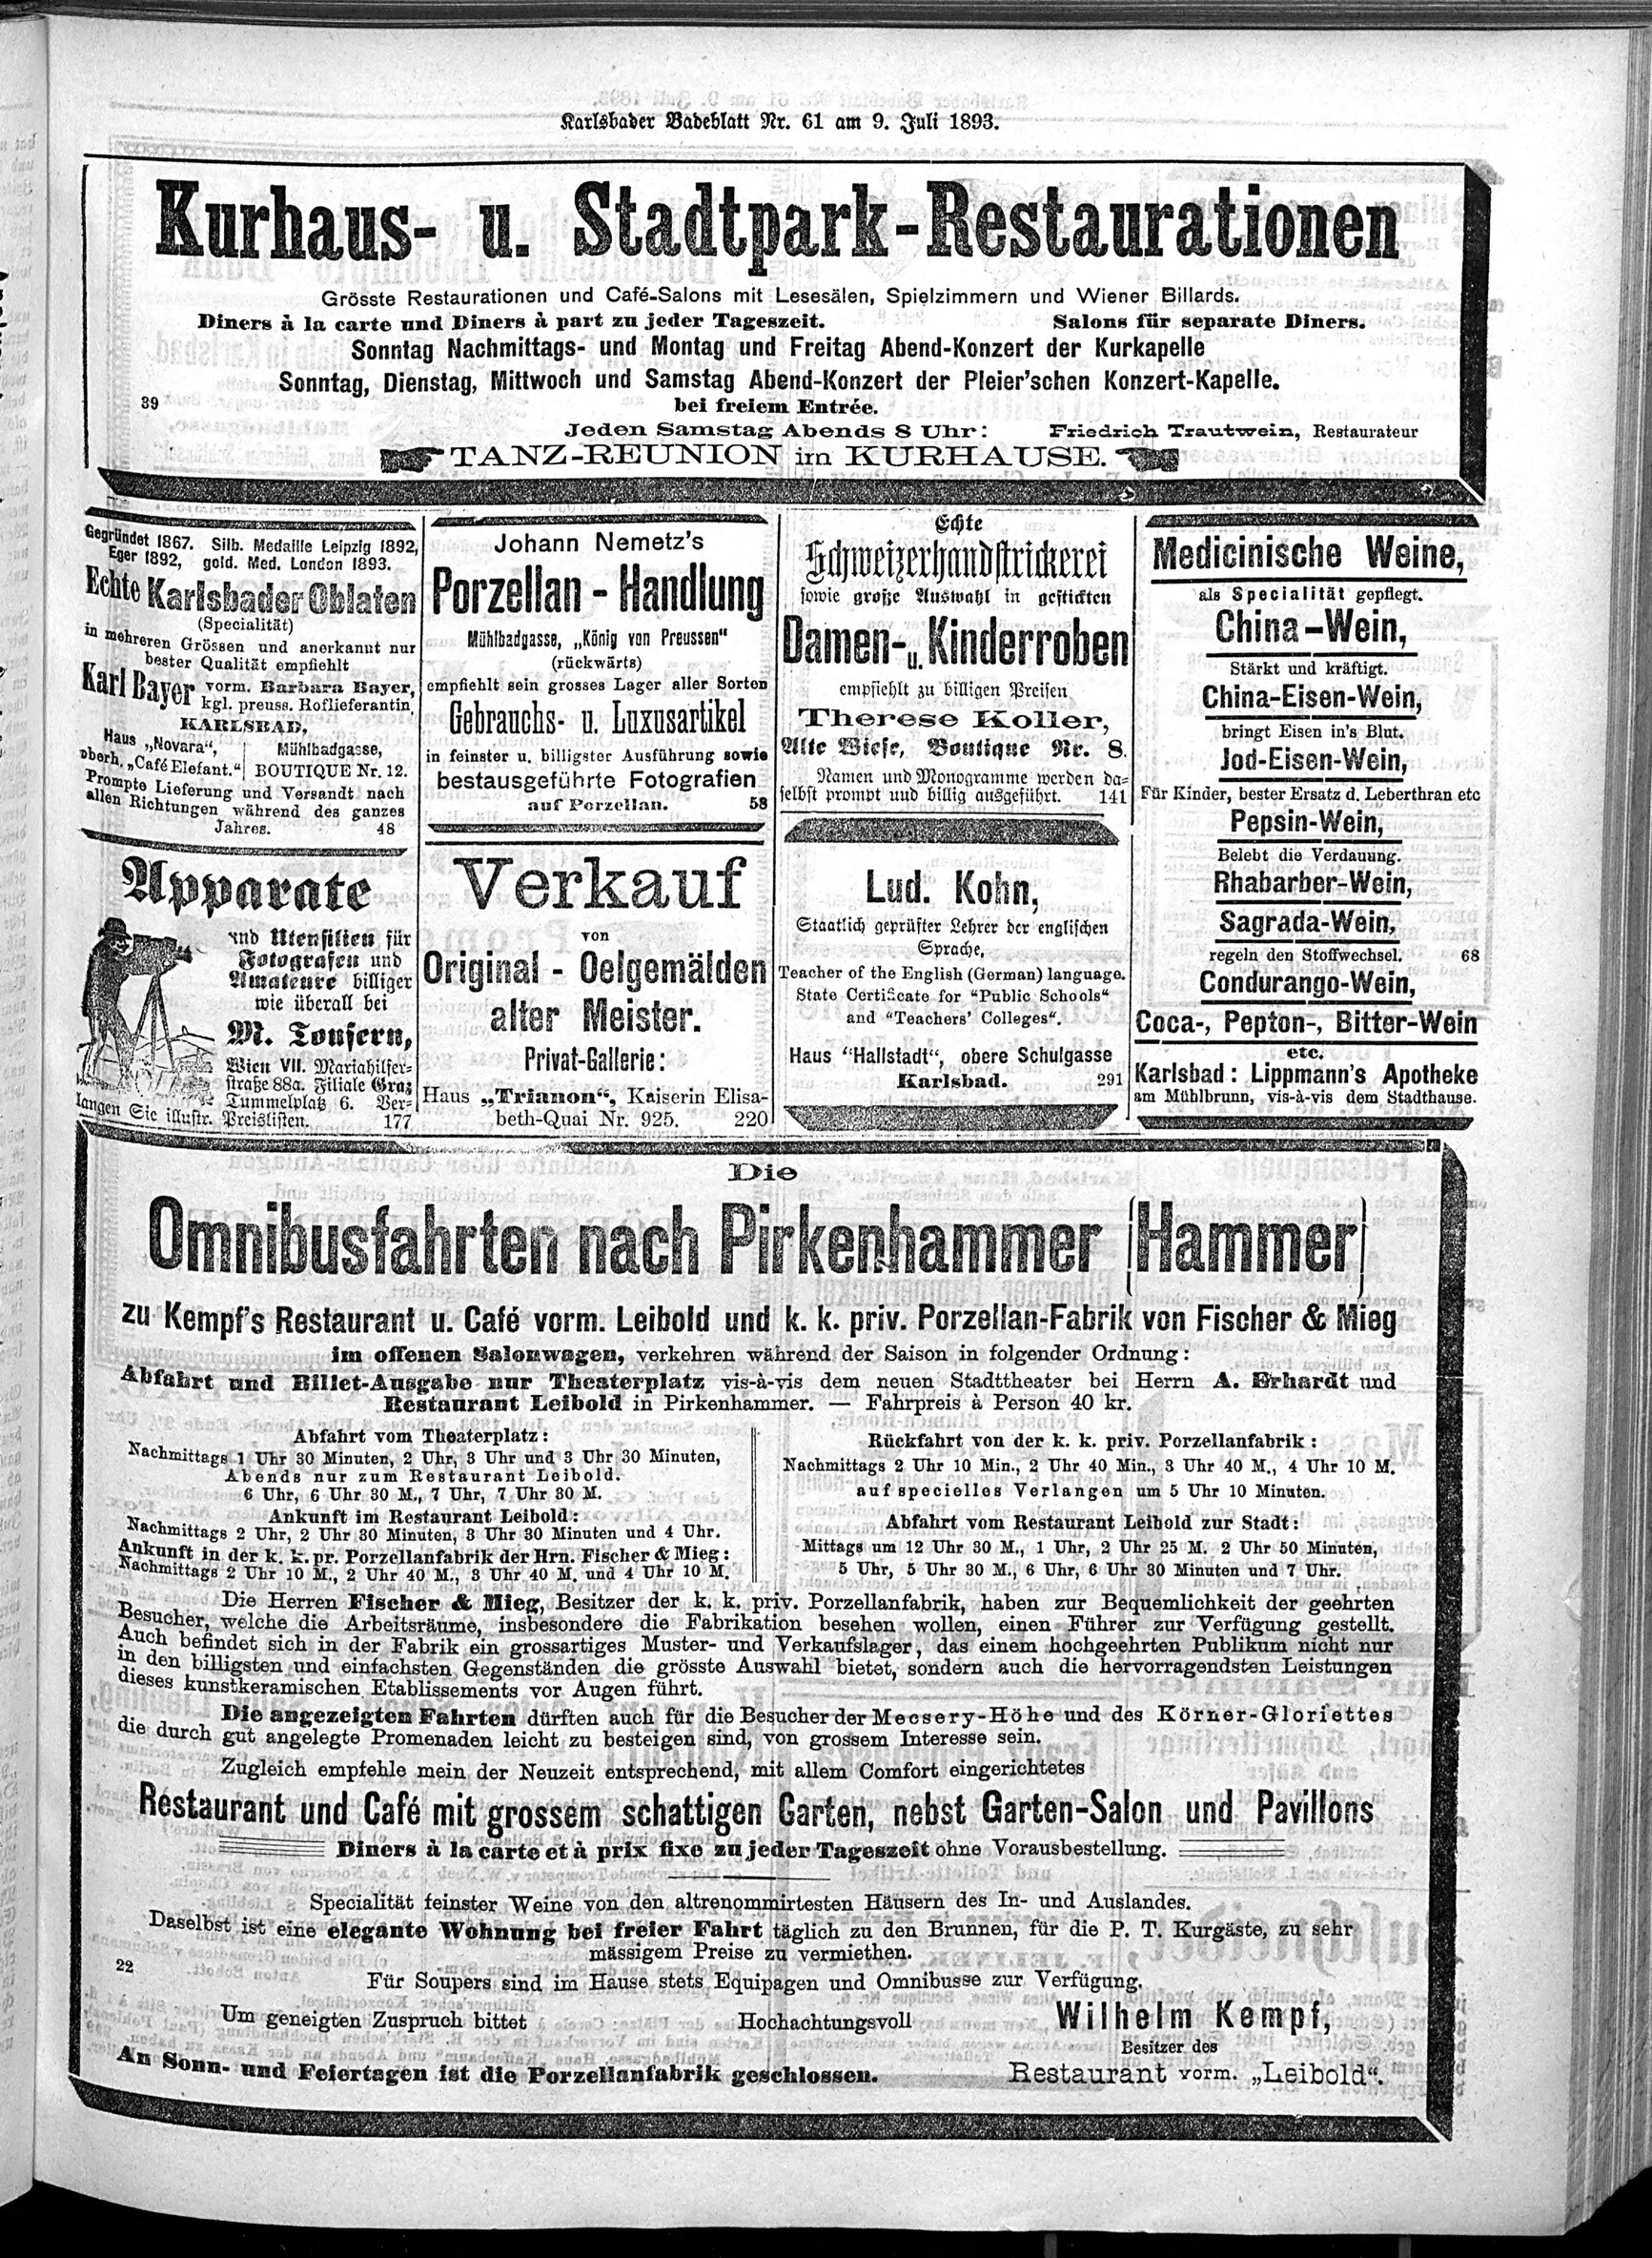 5. karlsbader-badeblatt-1893-07-09-n61_2515